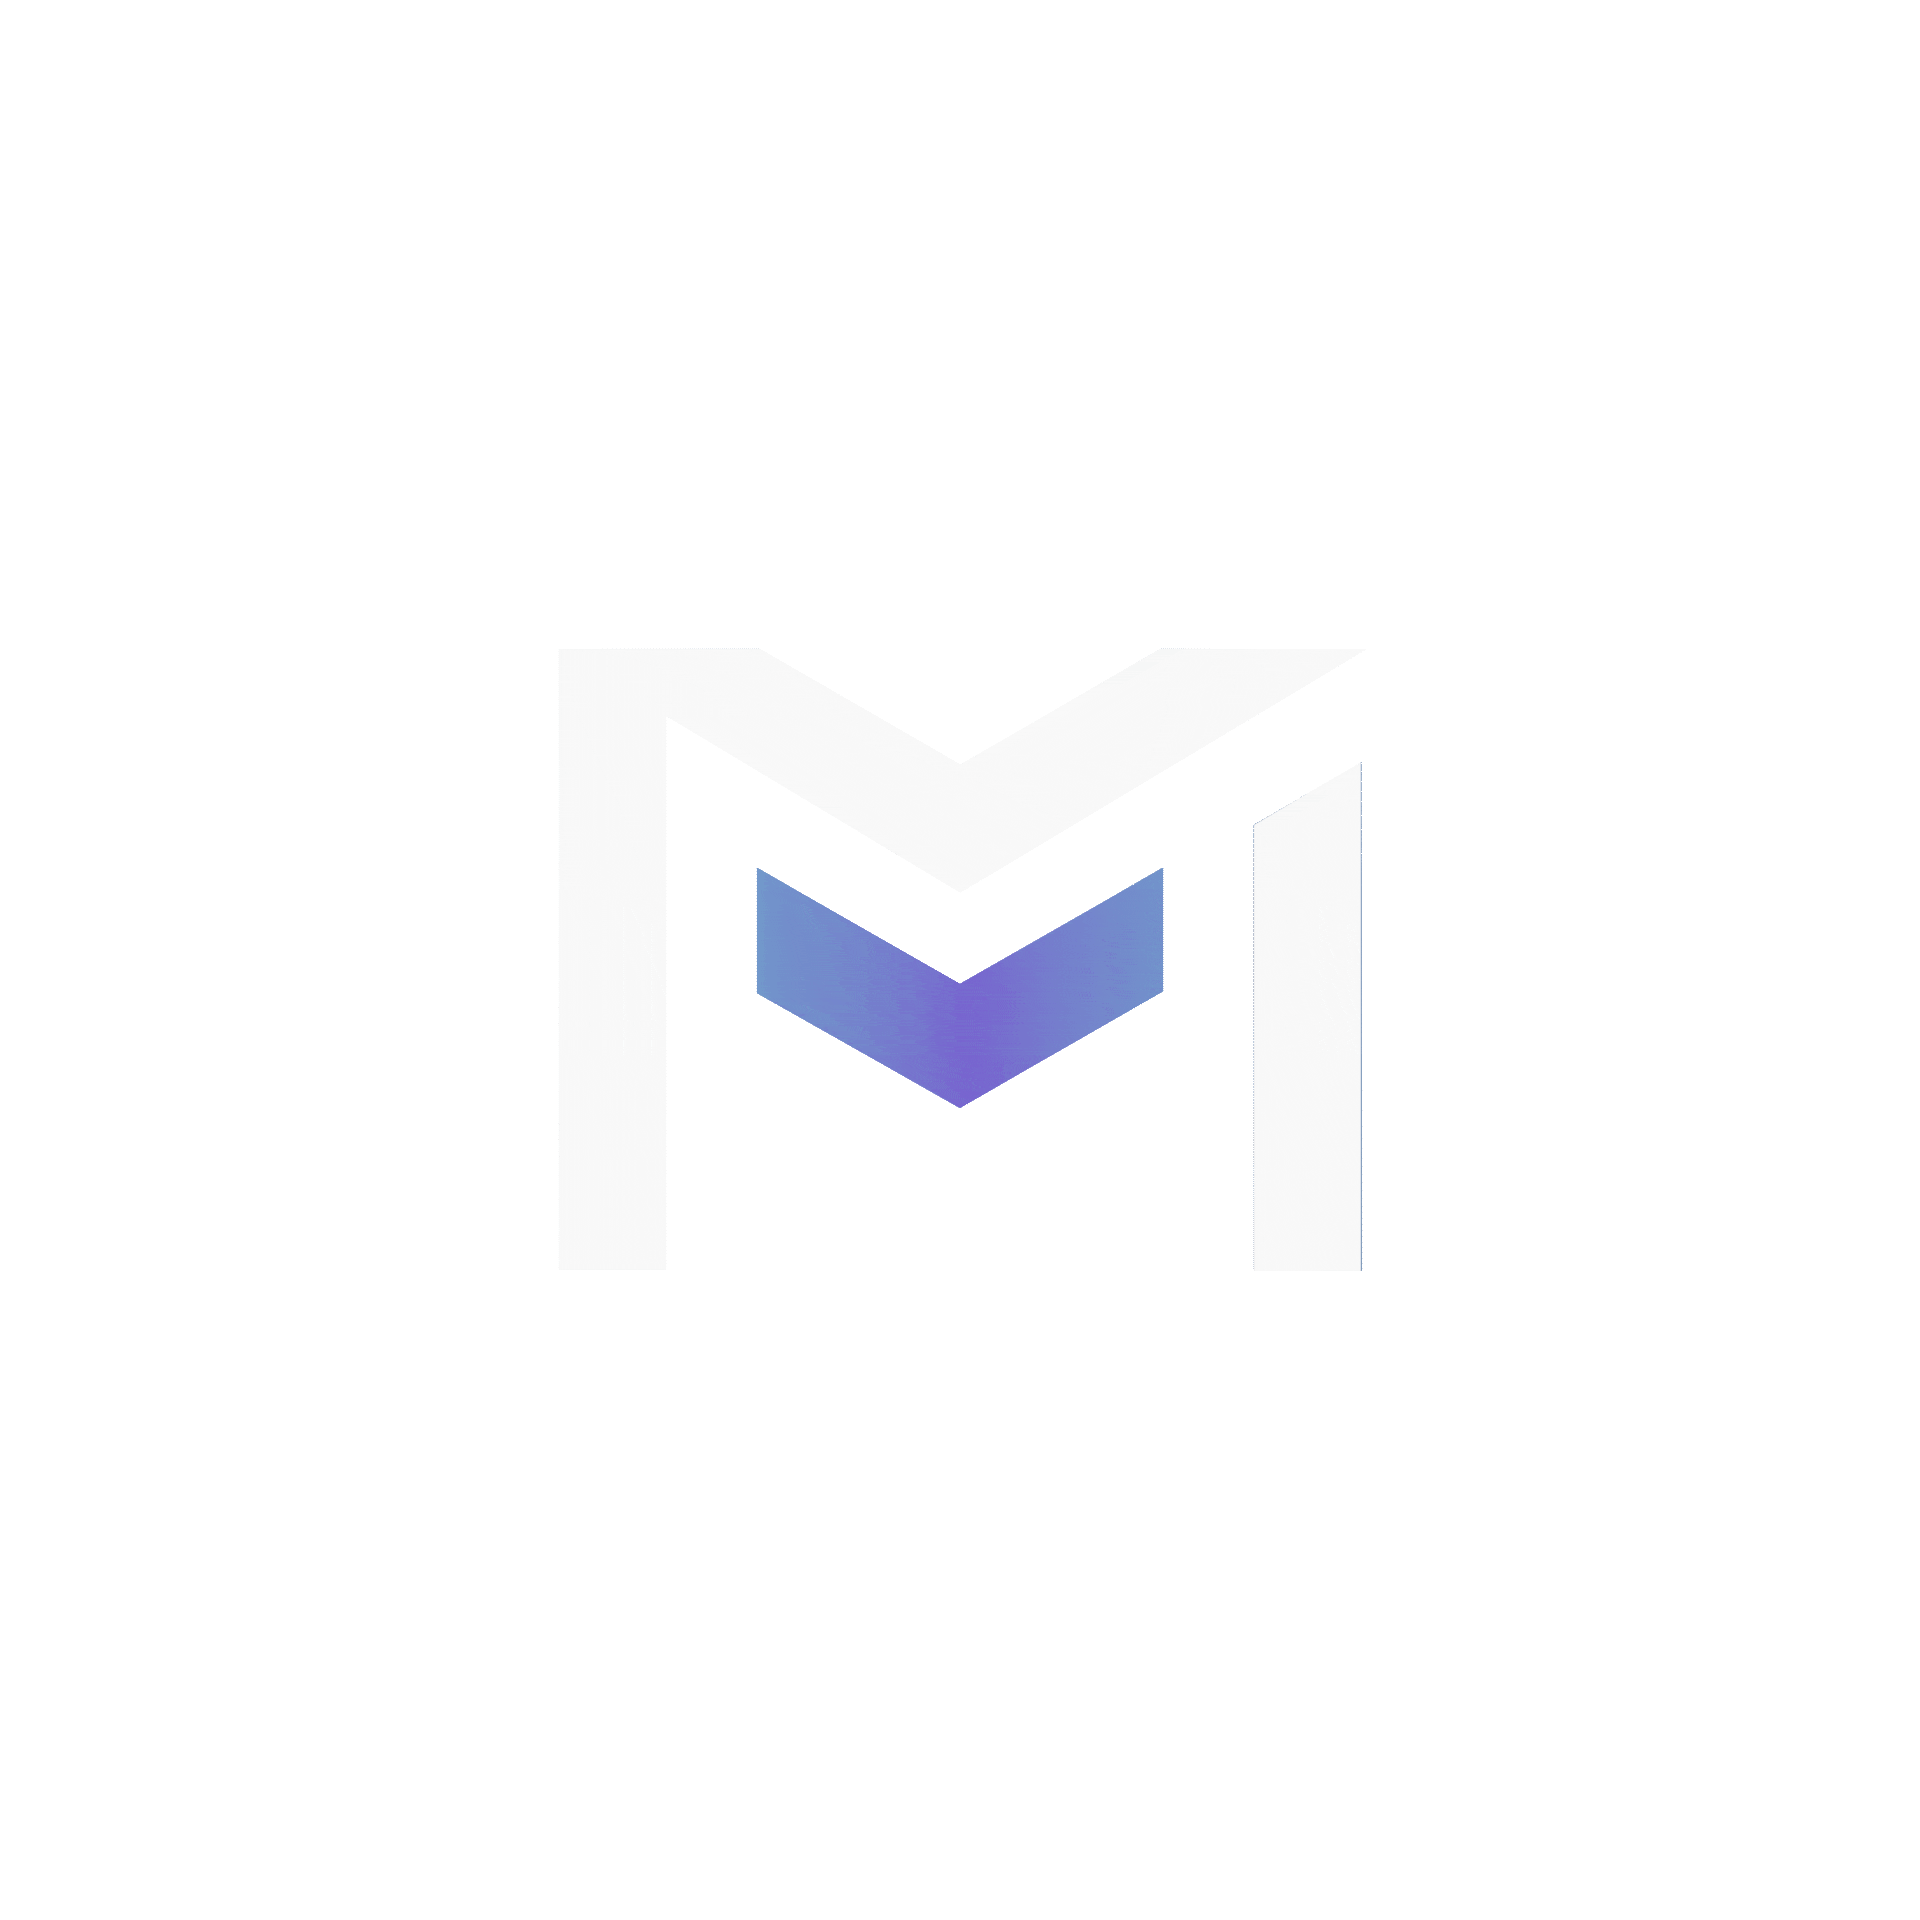 M20 Logo Animation